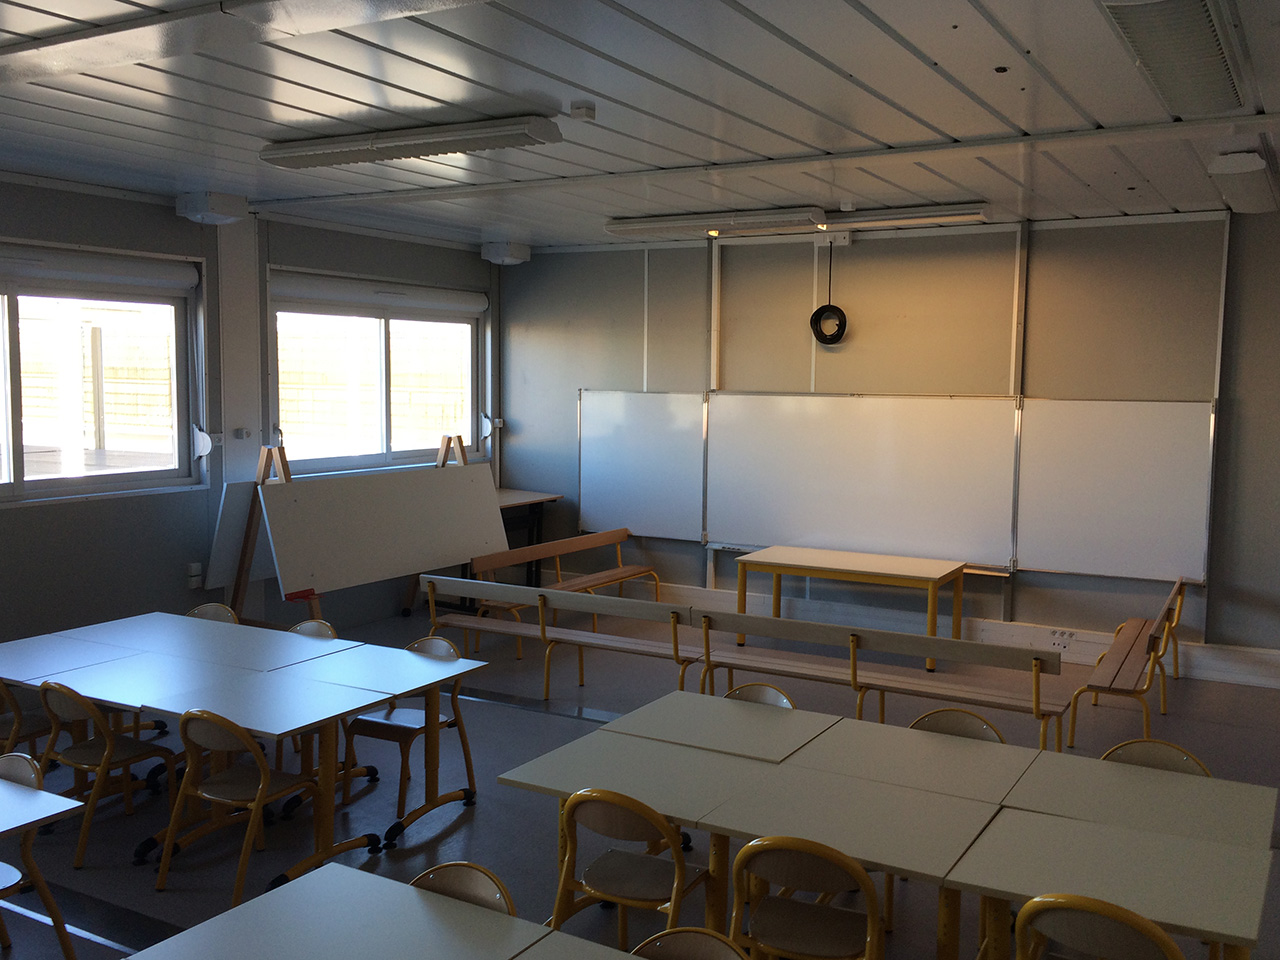 L'une des salles de classe de maternelle - LyonMag